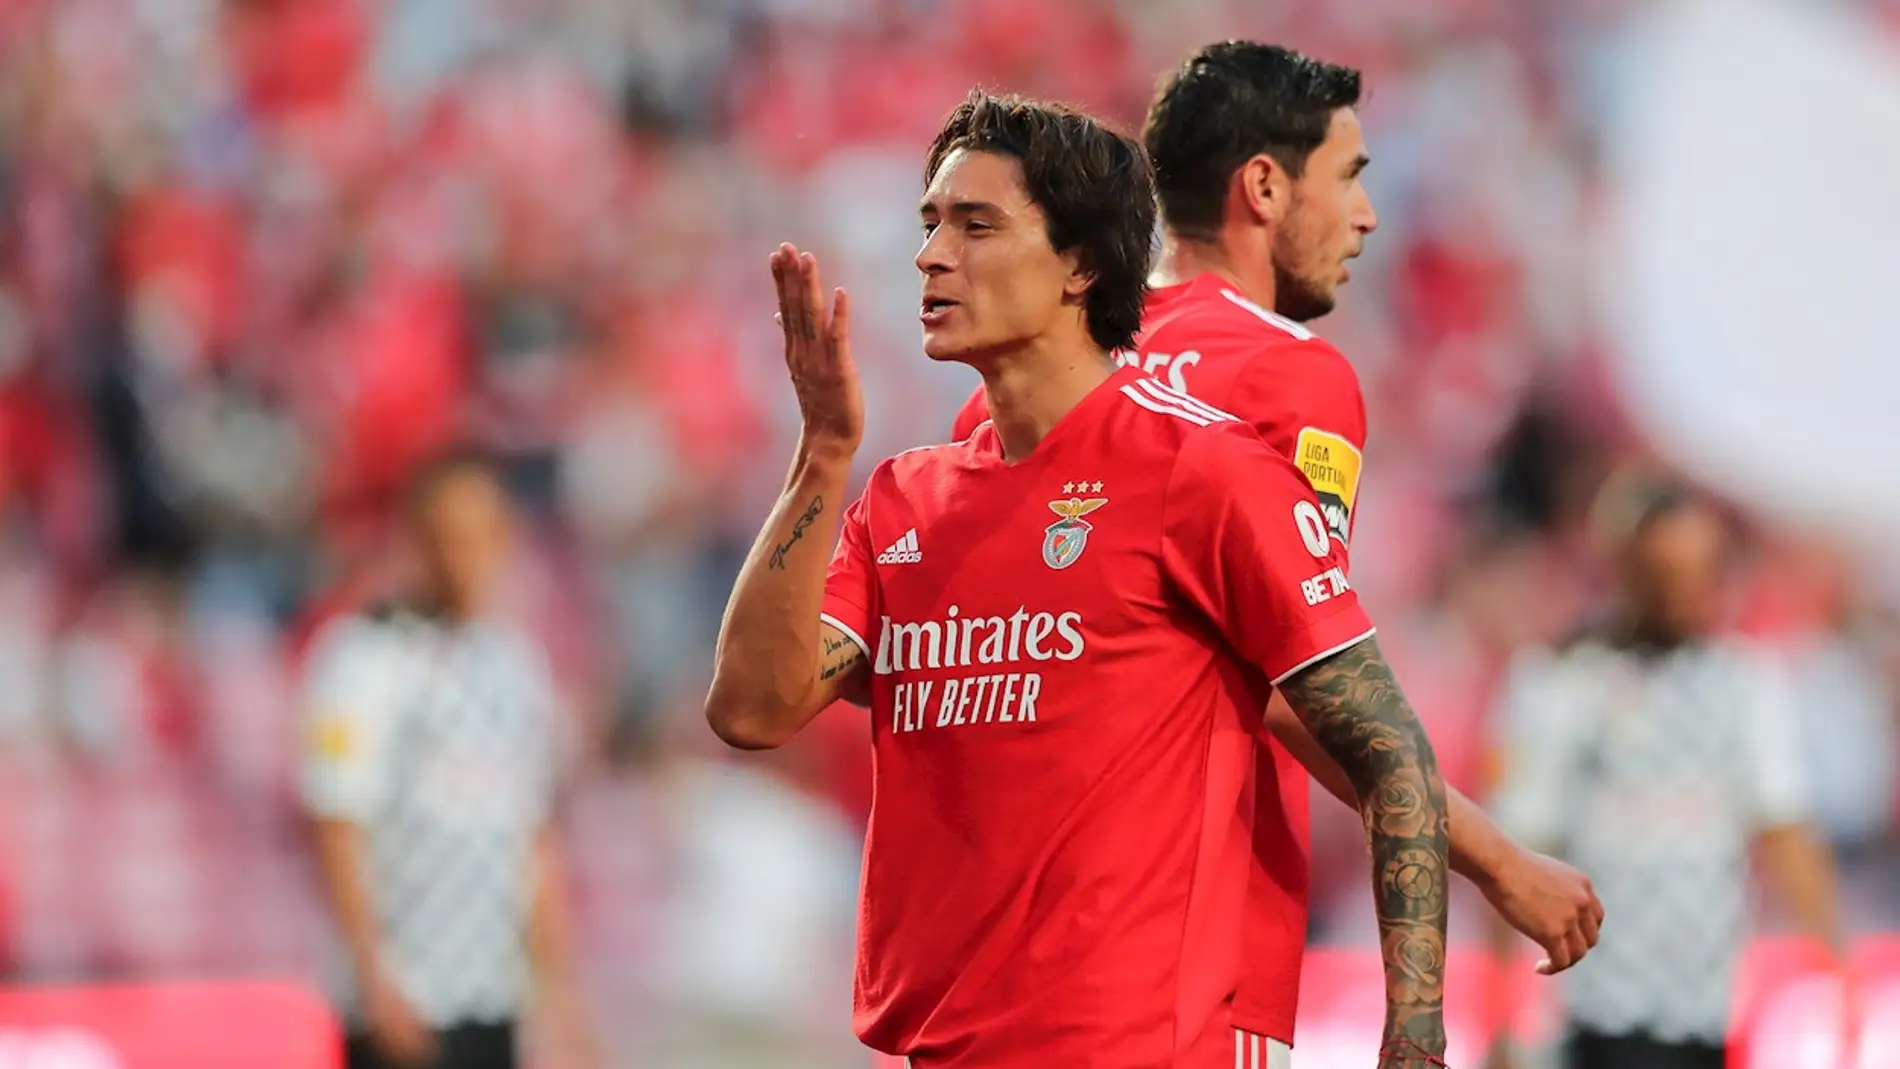 ¿Cómo se le conoce al Benfica